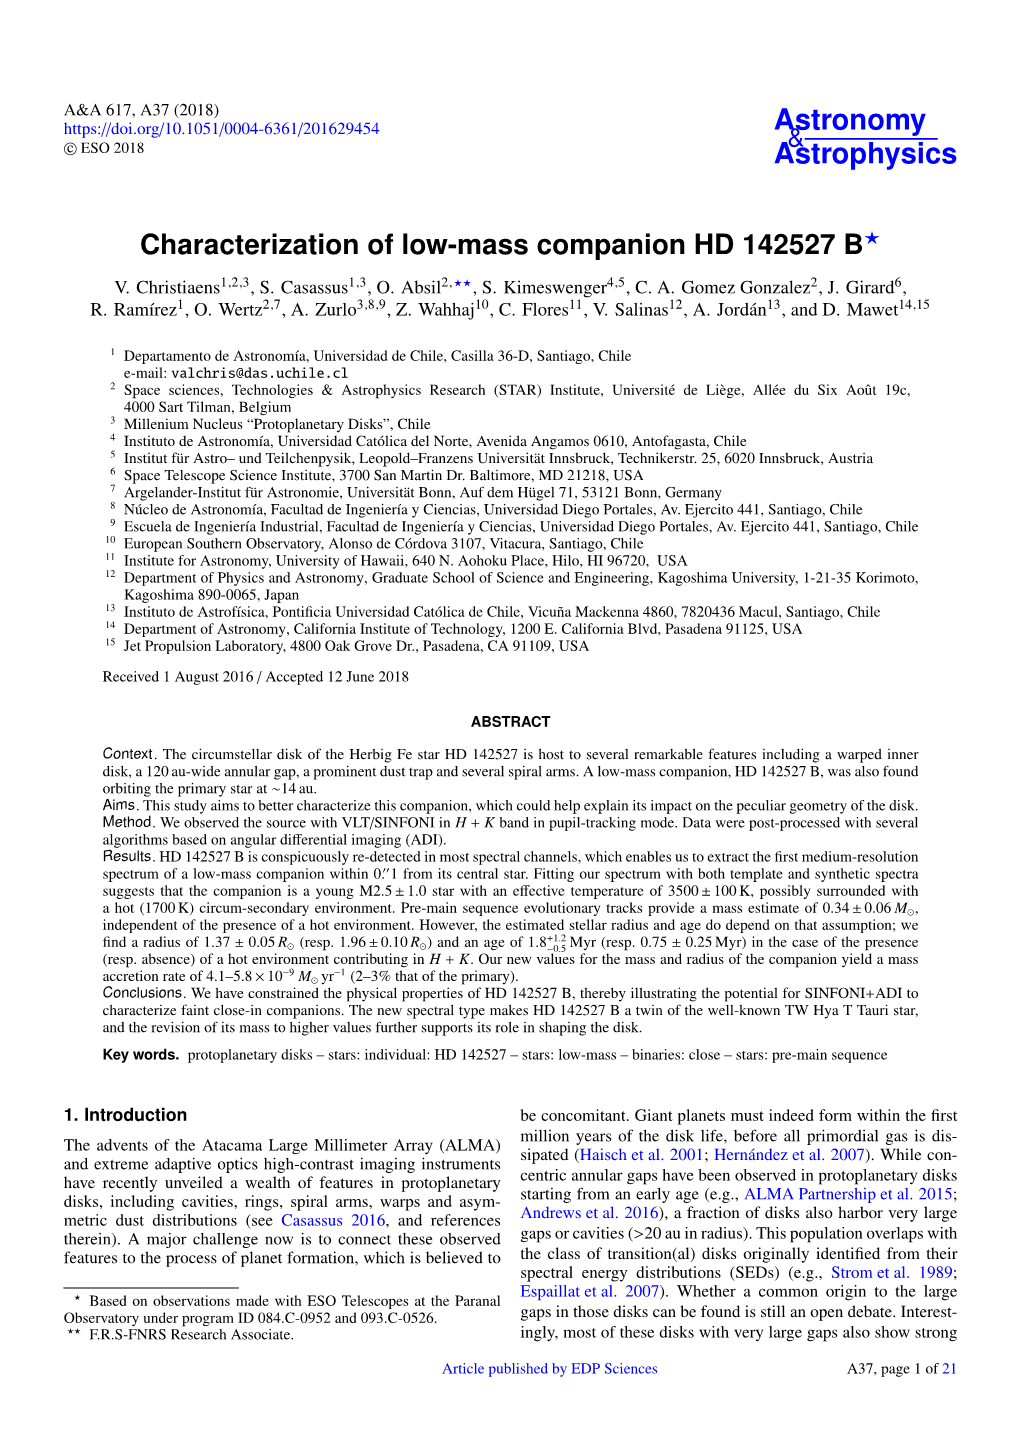 Characterization of Low-Mass Companion HD 142527 B? V